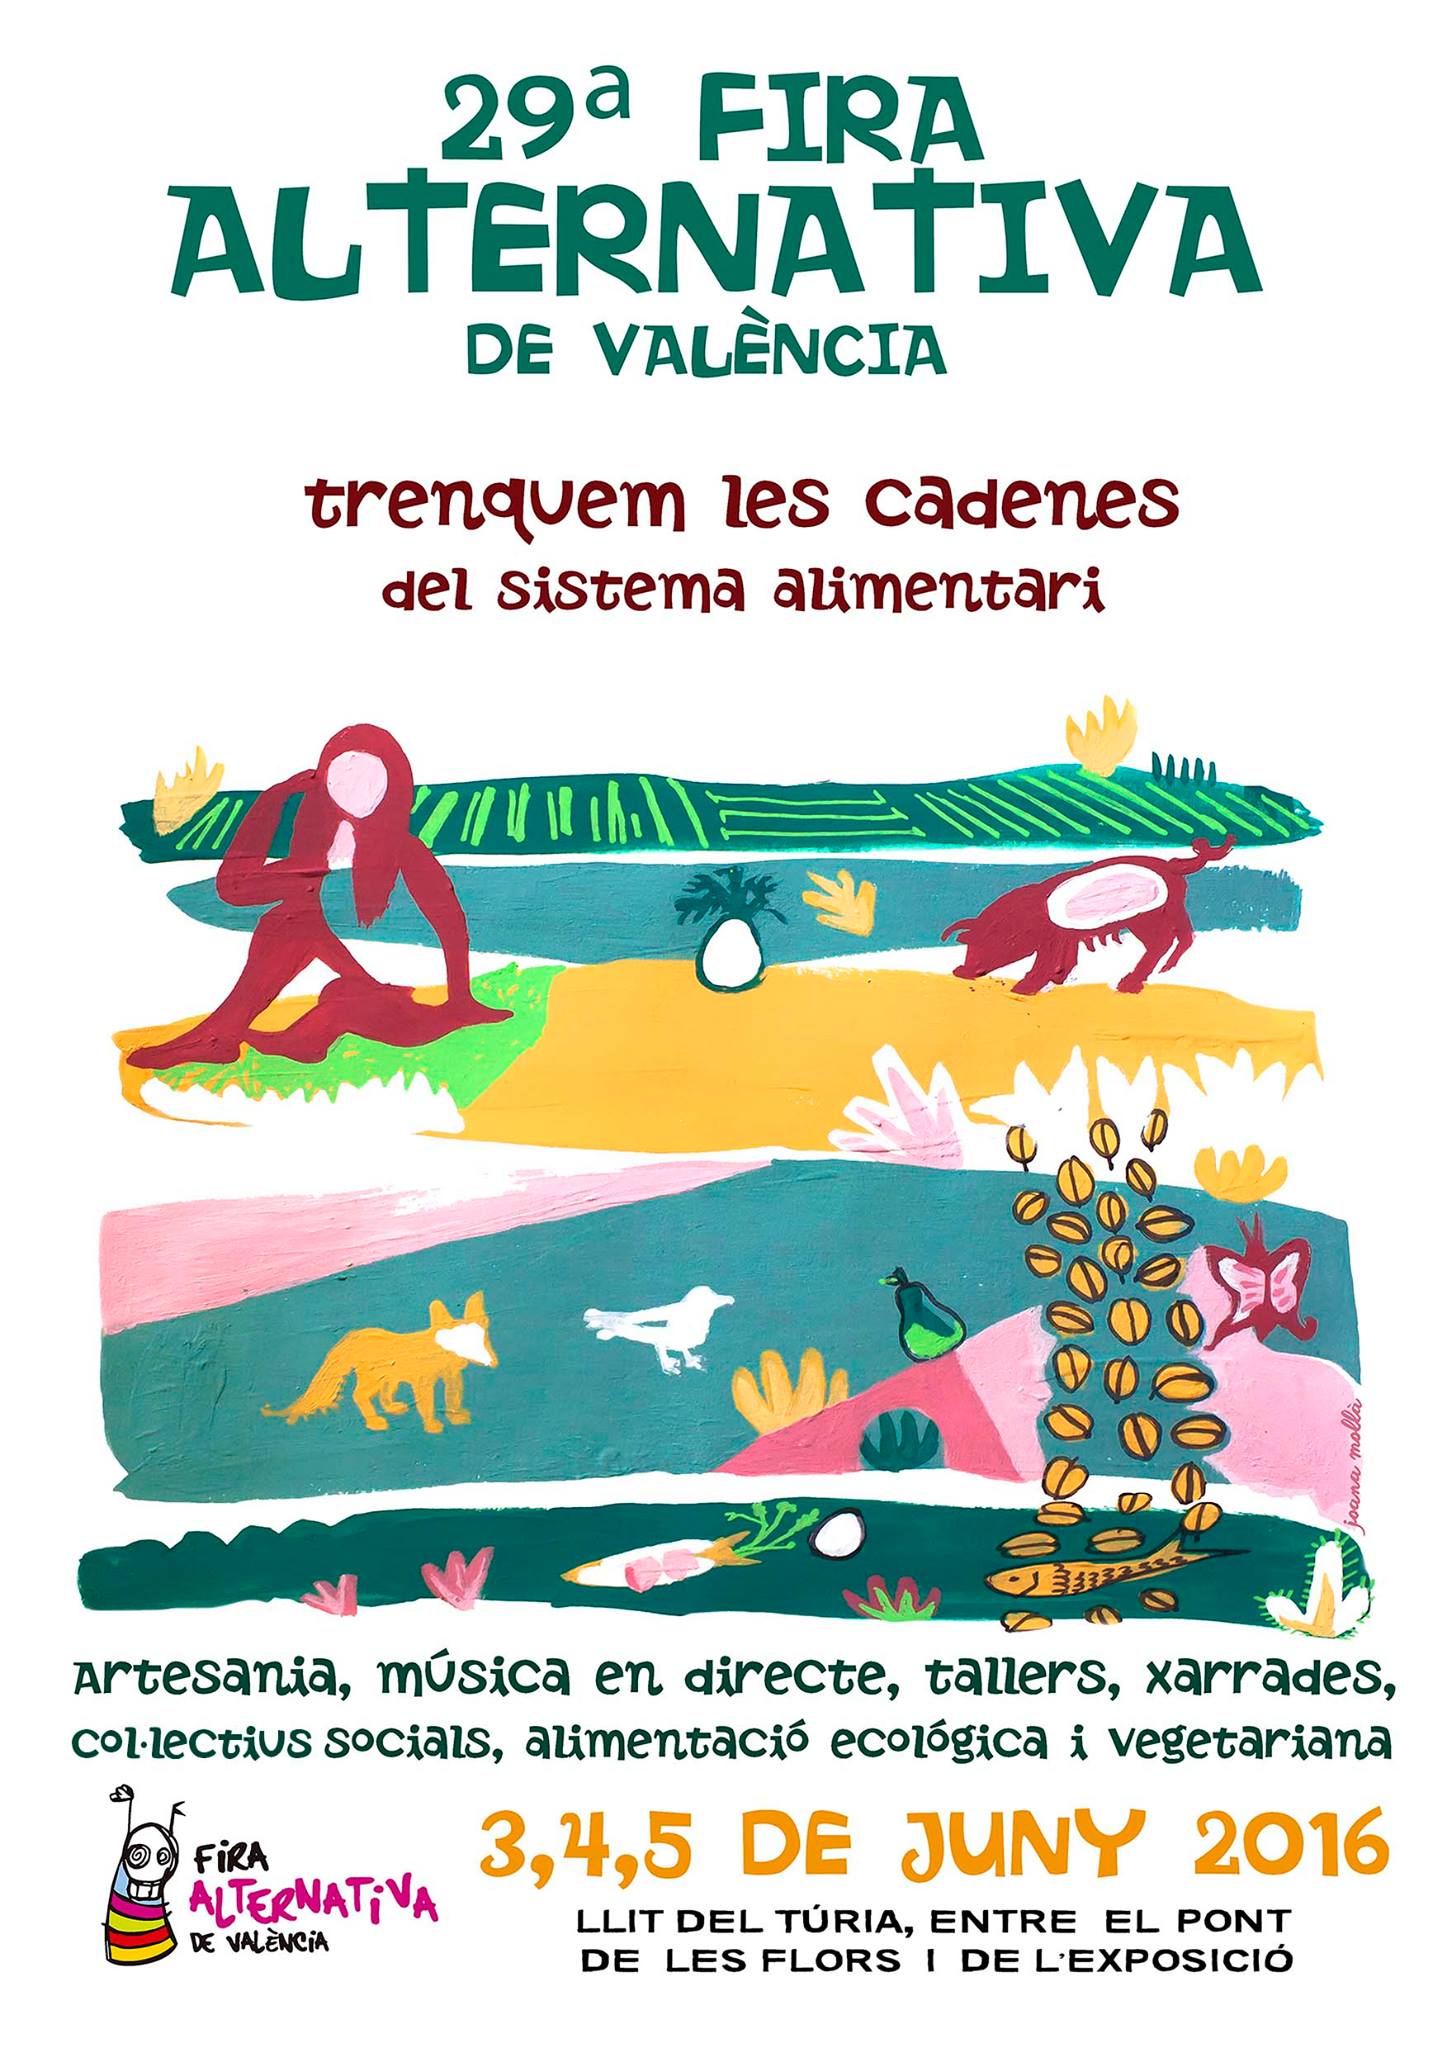 29ª Fira Alternativa de València: Trenquem amb les cadenes del sistema alimentari